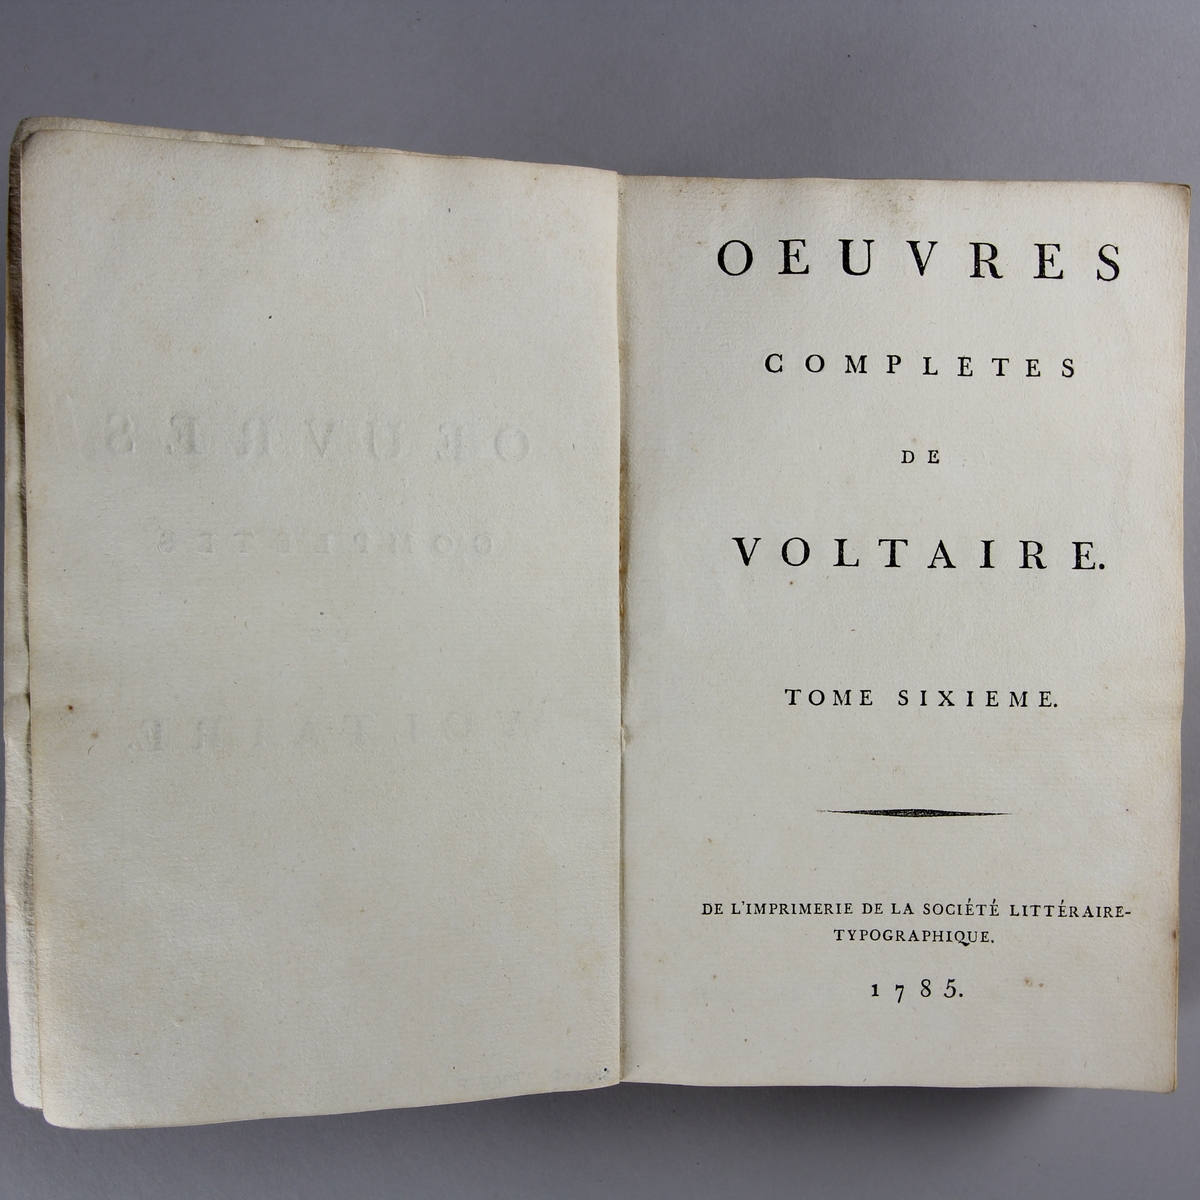 Bok, häftad,"Oeuvres complètes de Voltaire." del 6, tryckt 1785.
Pärm av gråblått papper, skurna snitt. På ryggen pappersetikett med tryckt text med volymens namn och nummer. Ryggen blekt.